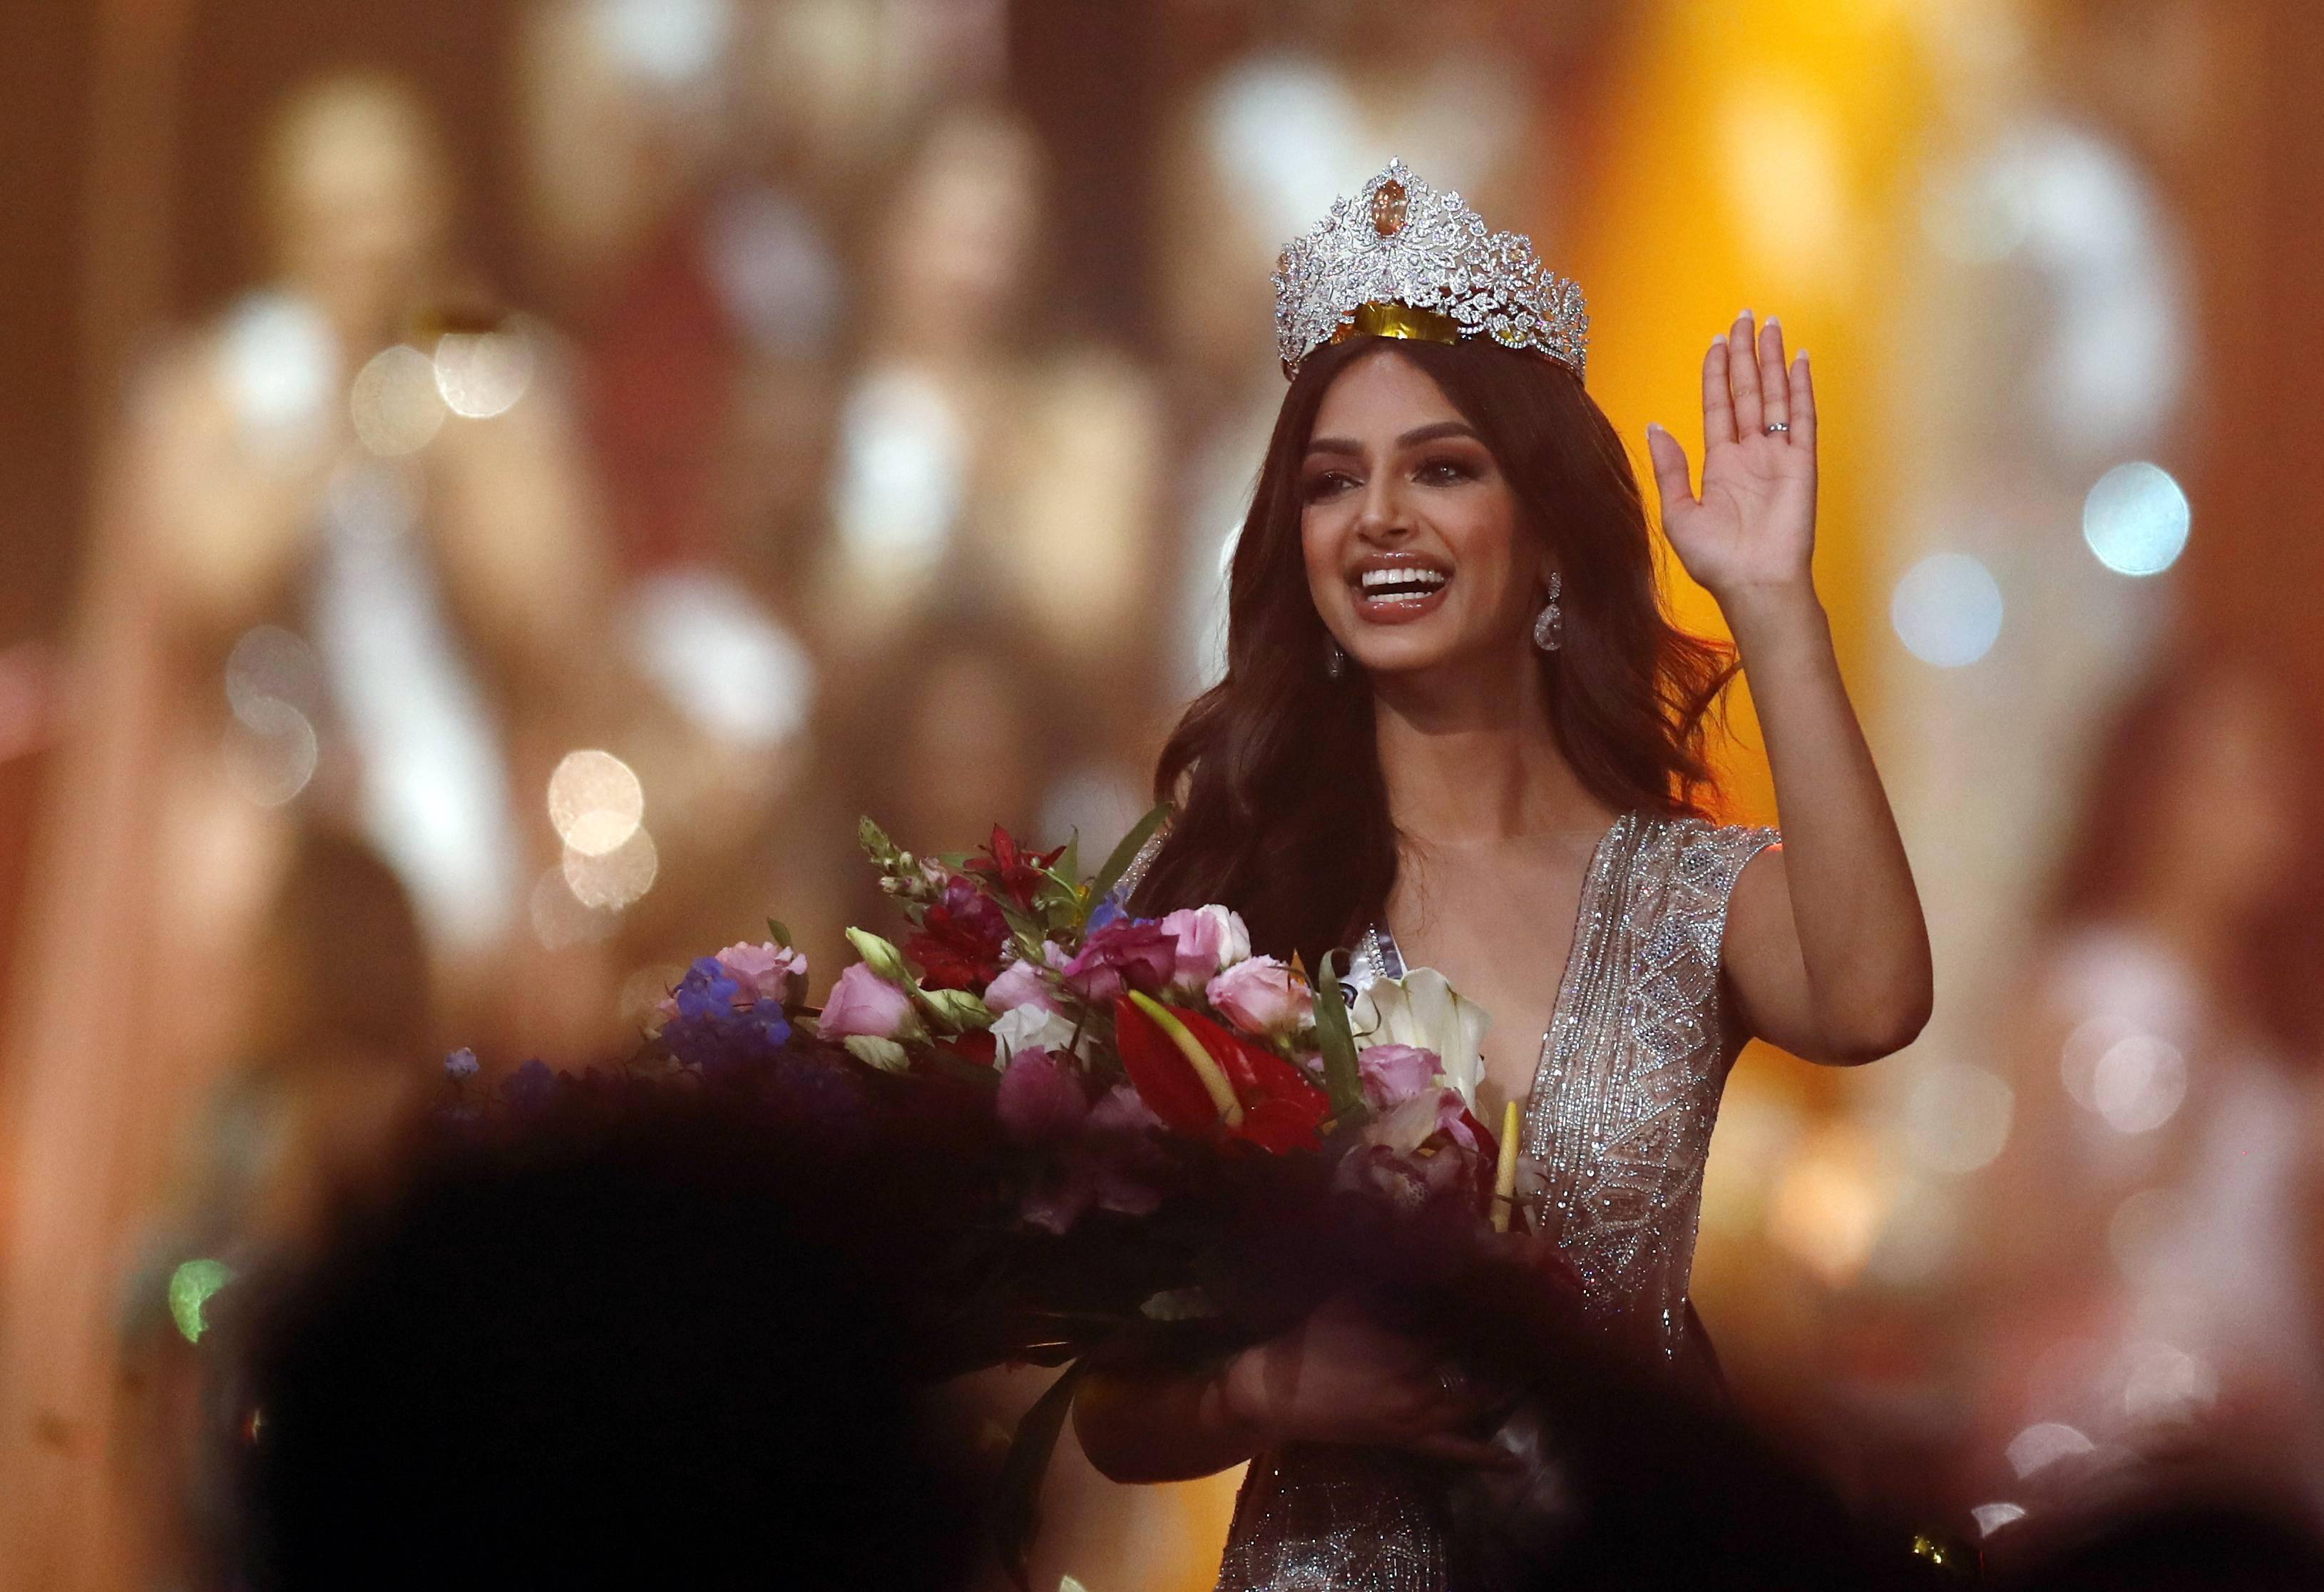 无独有偶,2014年的美国小姐冠军,是位叫做妮娜·达瓦鲁丽的印度裔美国